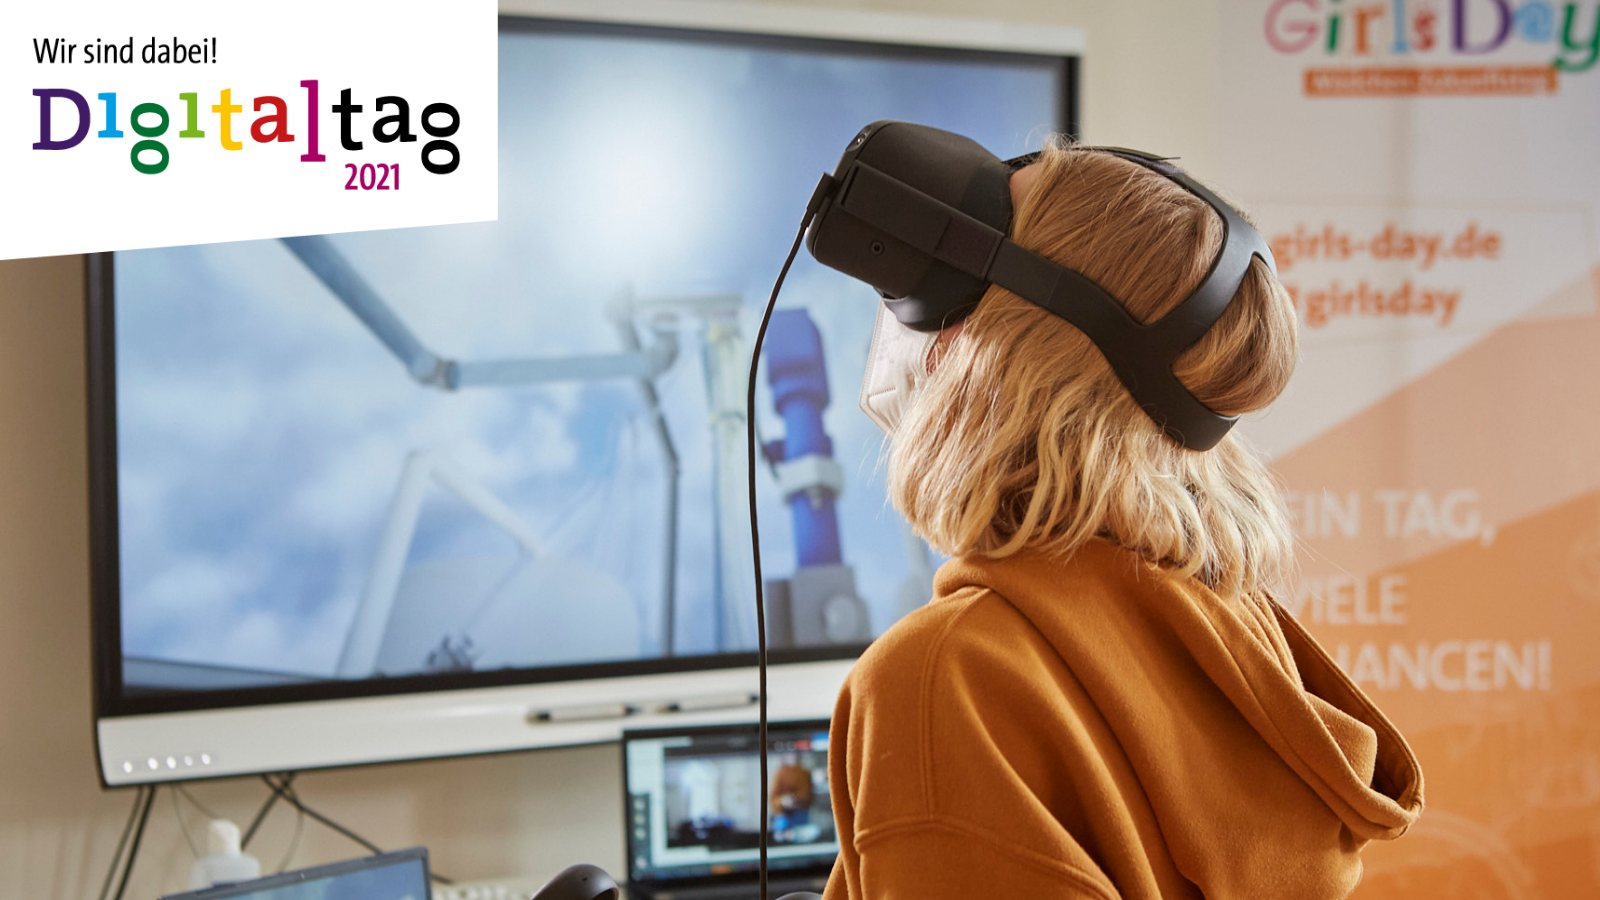 Ein Mädchen trägt eine VR-Brille und schaut nach oben. Oben links ist das Logo vom Digitaltag 2021 mit dem Schriftzug "Wir sind dabei" zu sehen.